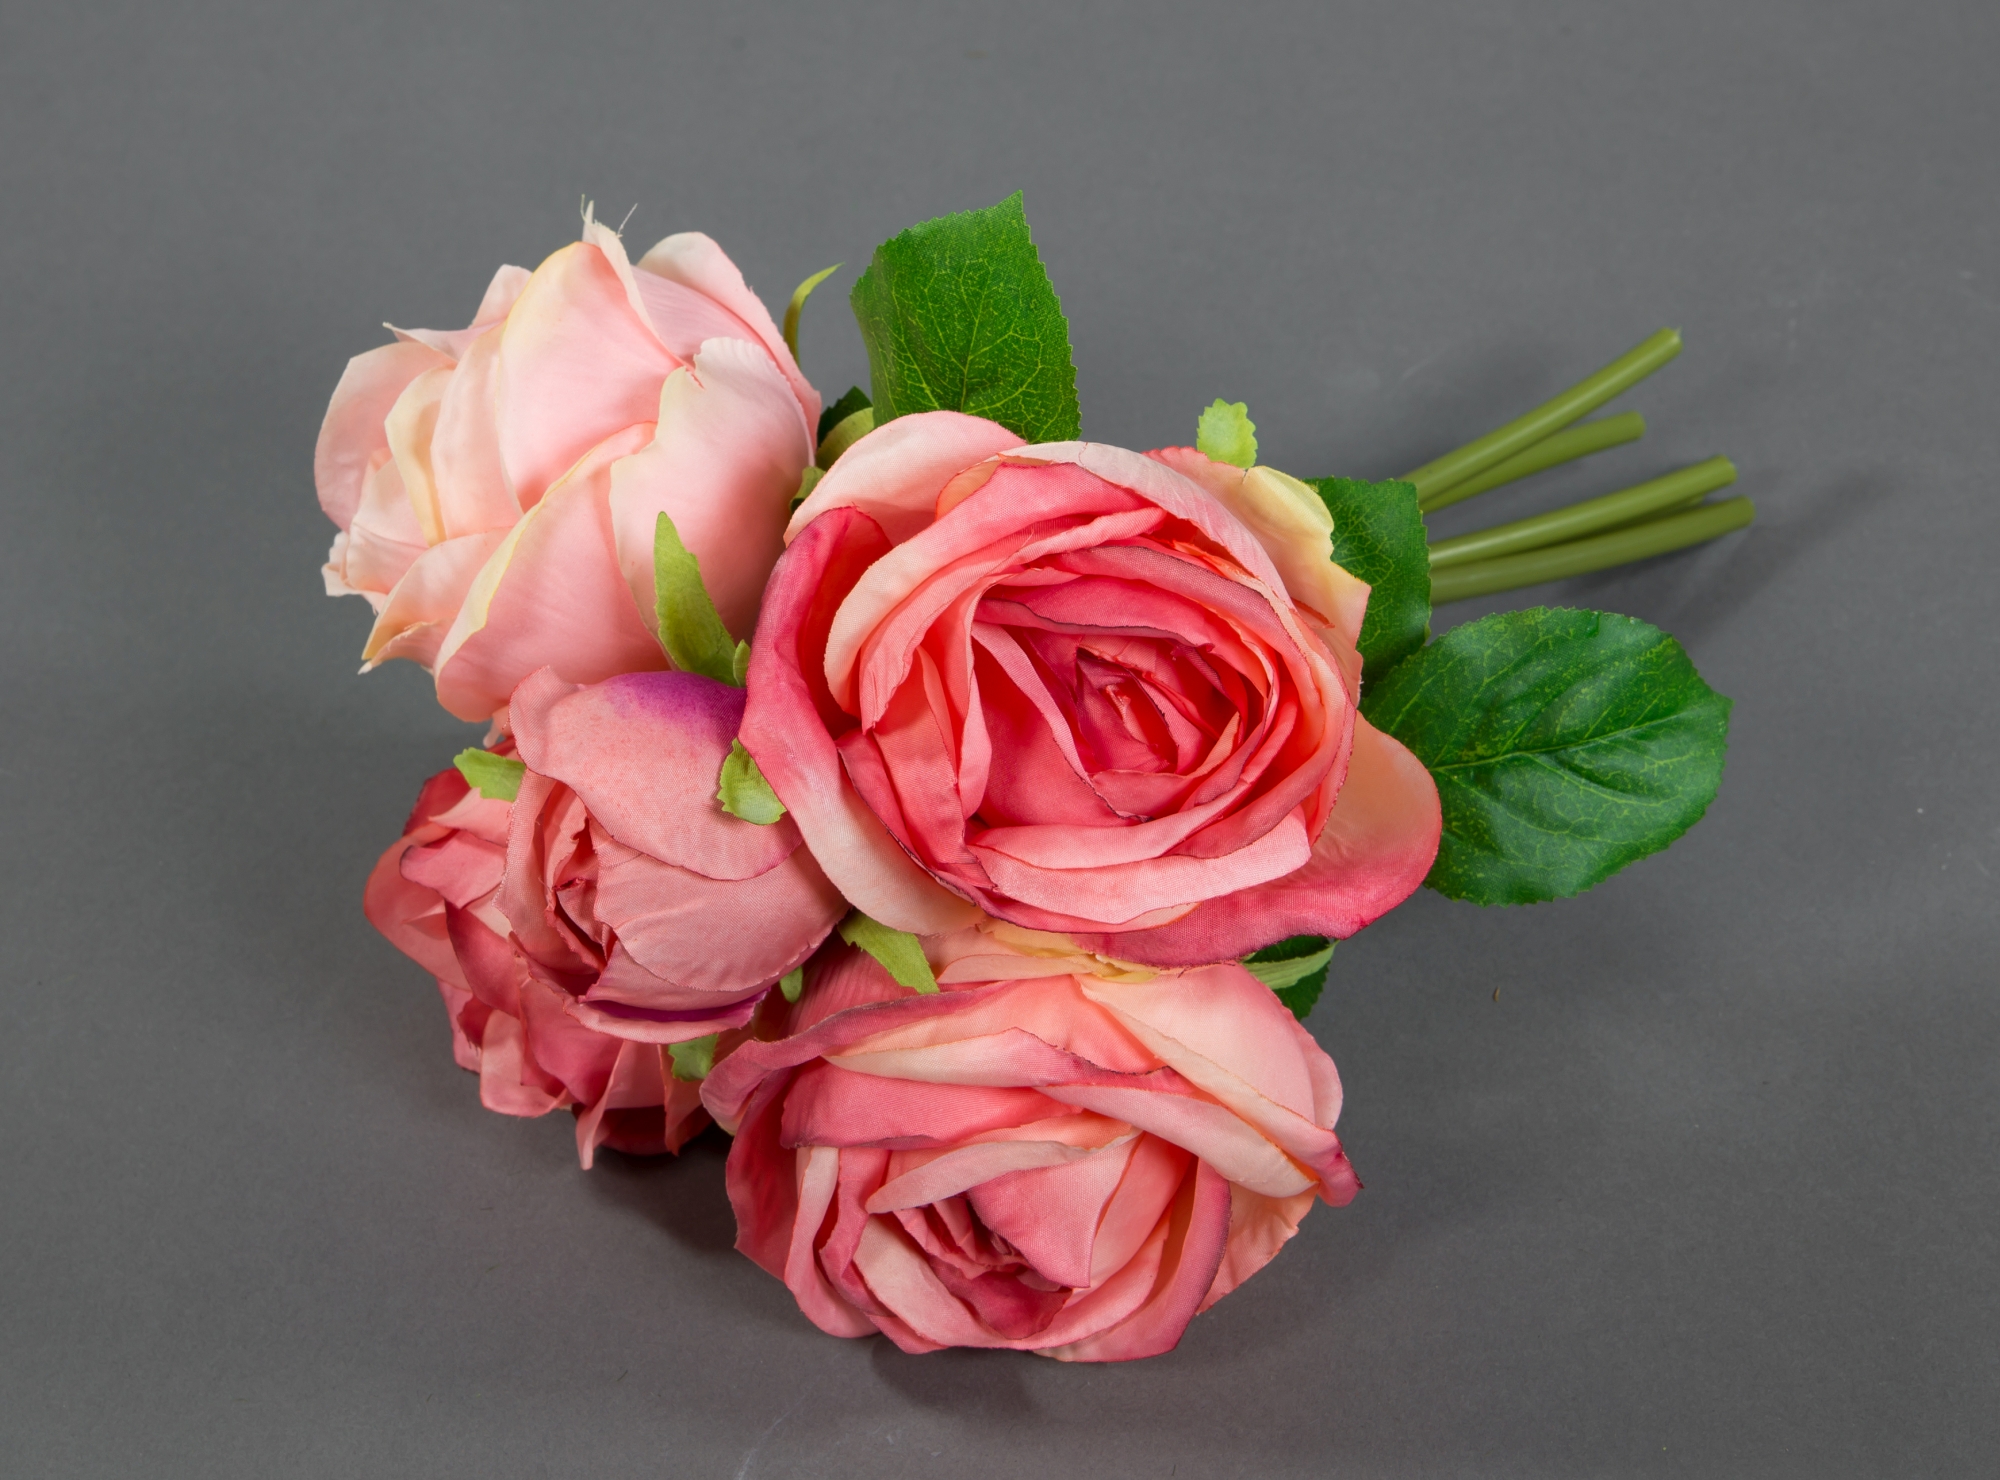 Strauß Blumen Blumenstrauß Kunstblumen Rosenstrauß rosa-pink FT künstliche 28x20cm Rosen